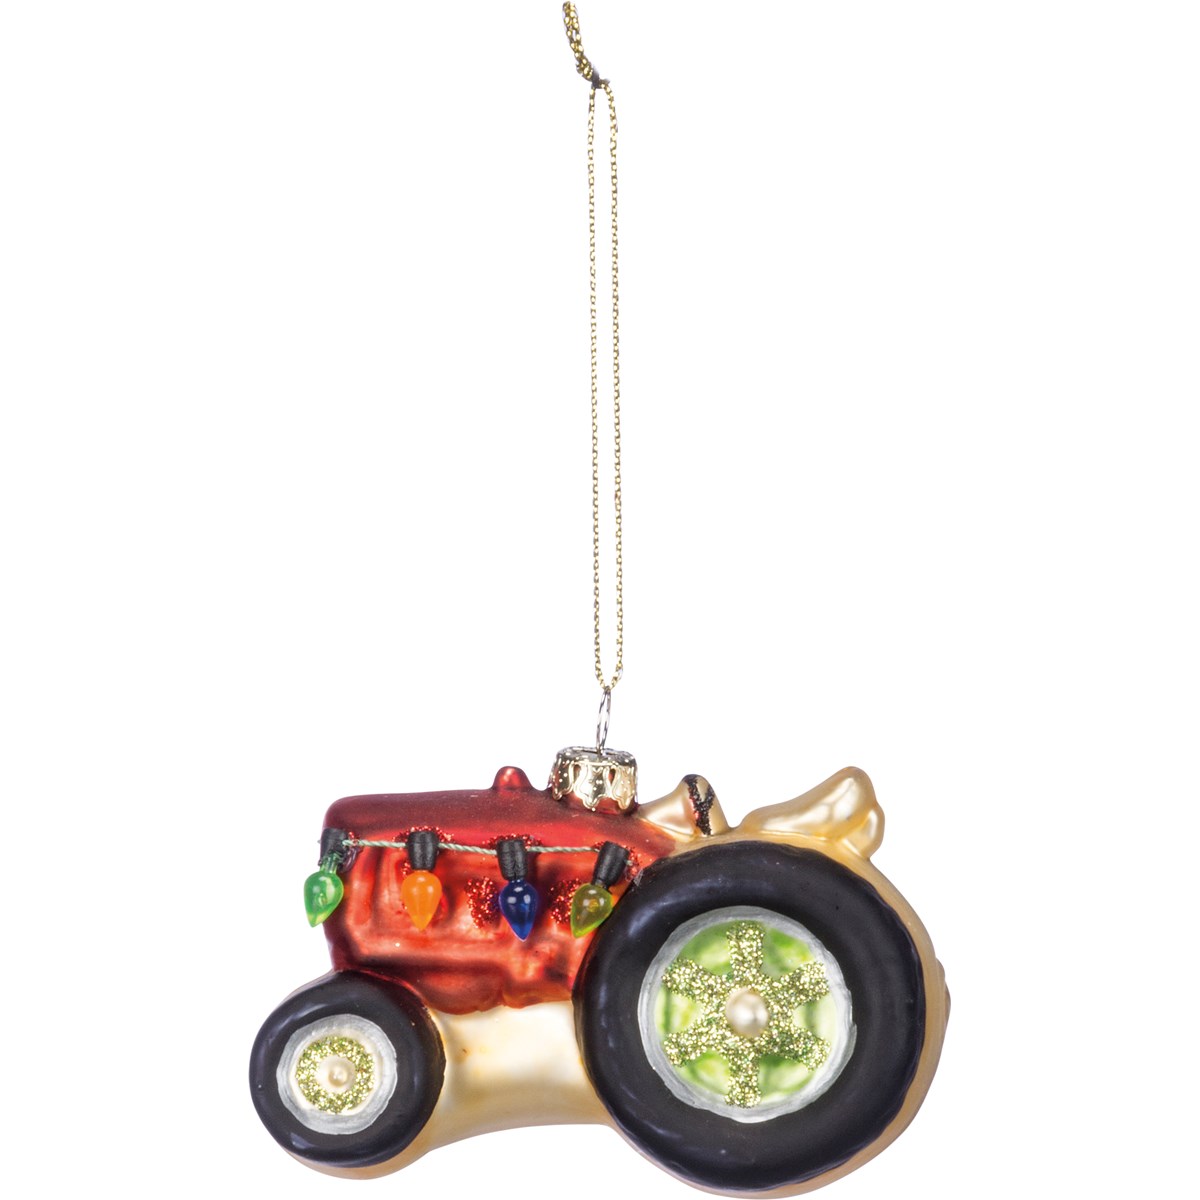 Glass Tractor Ornament - Glass, Metal, Plastic, Glitter